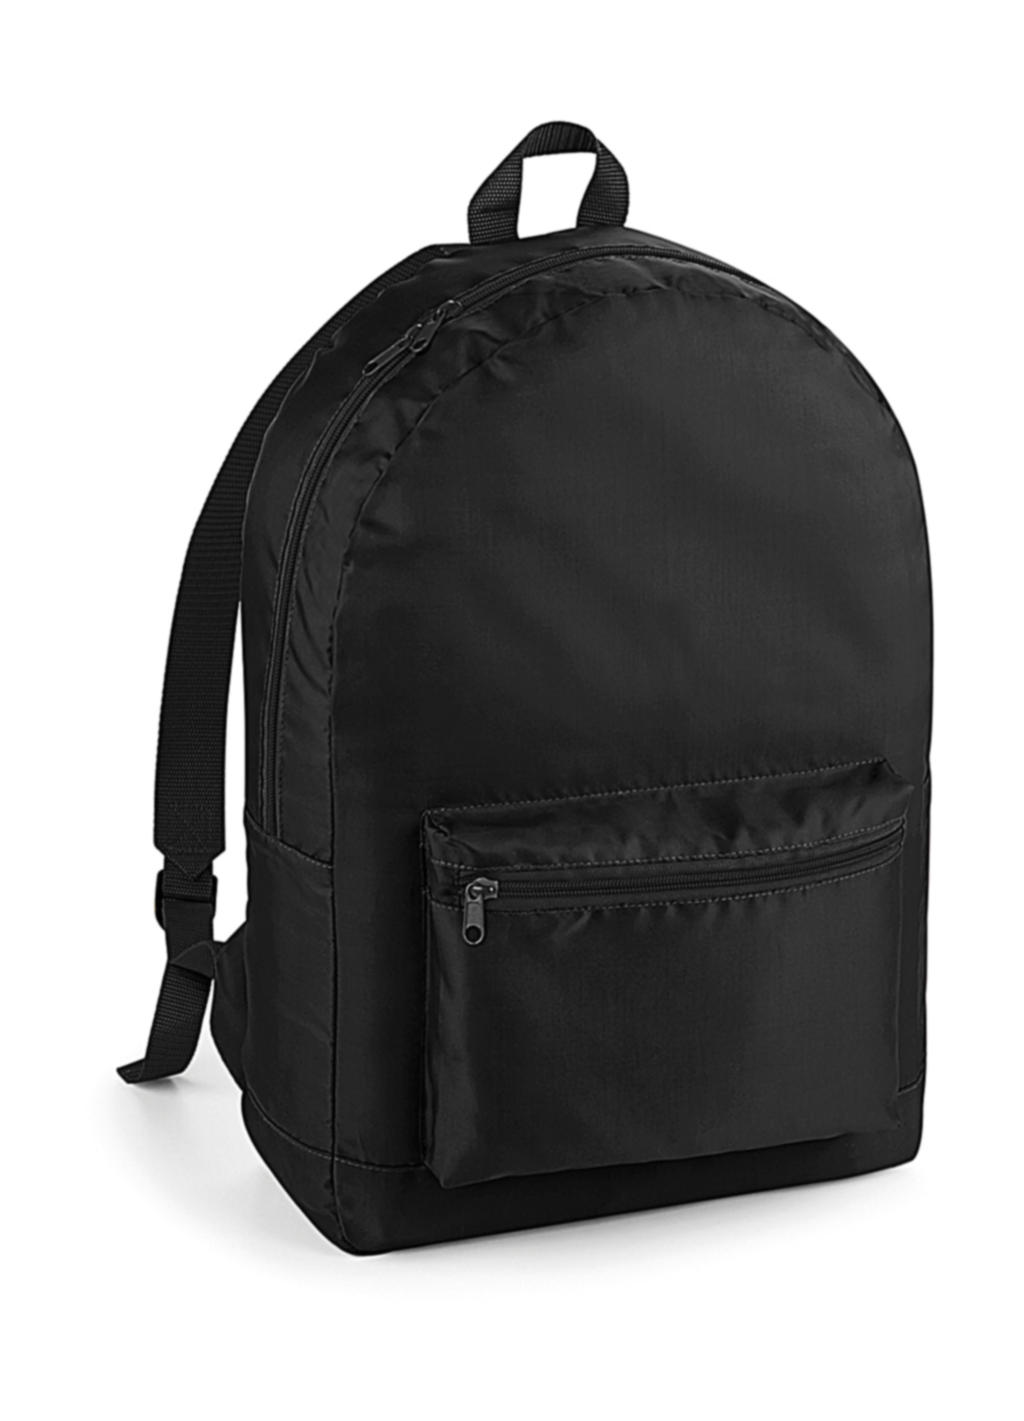  Packaway Backpack in Farbe Black/Black